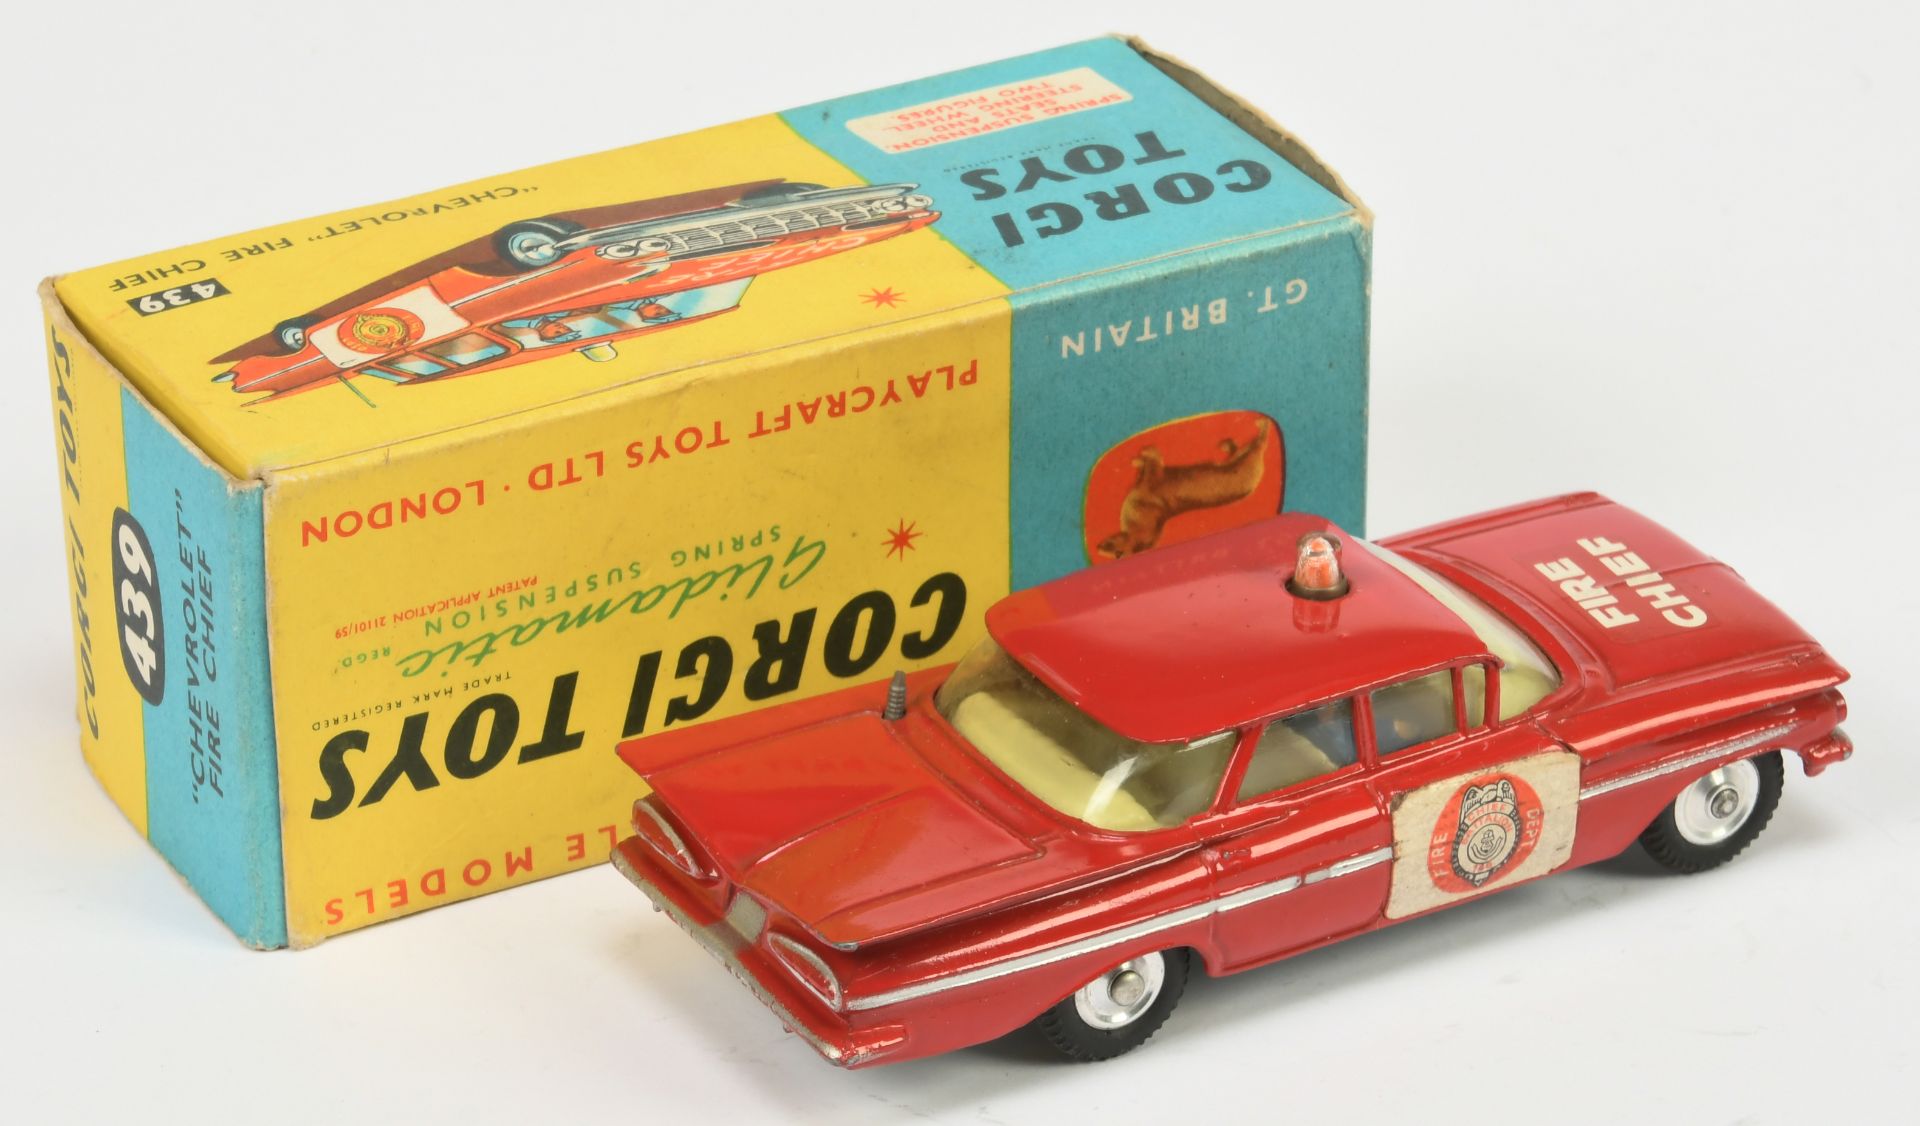 Corgi Toys 439 Chevrolet Impala "Fire Chief" - Red, lemon interior with figures, silver trim, spu... - Bild 2 aus 2